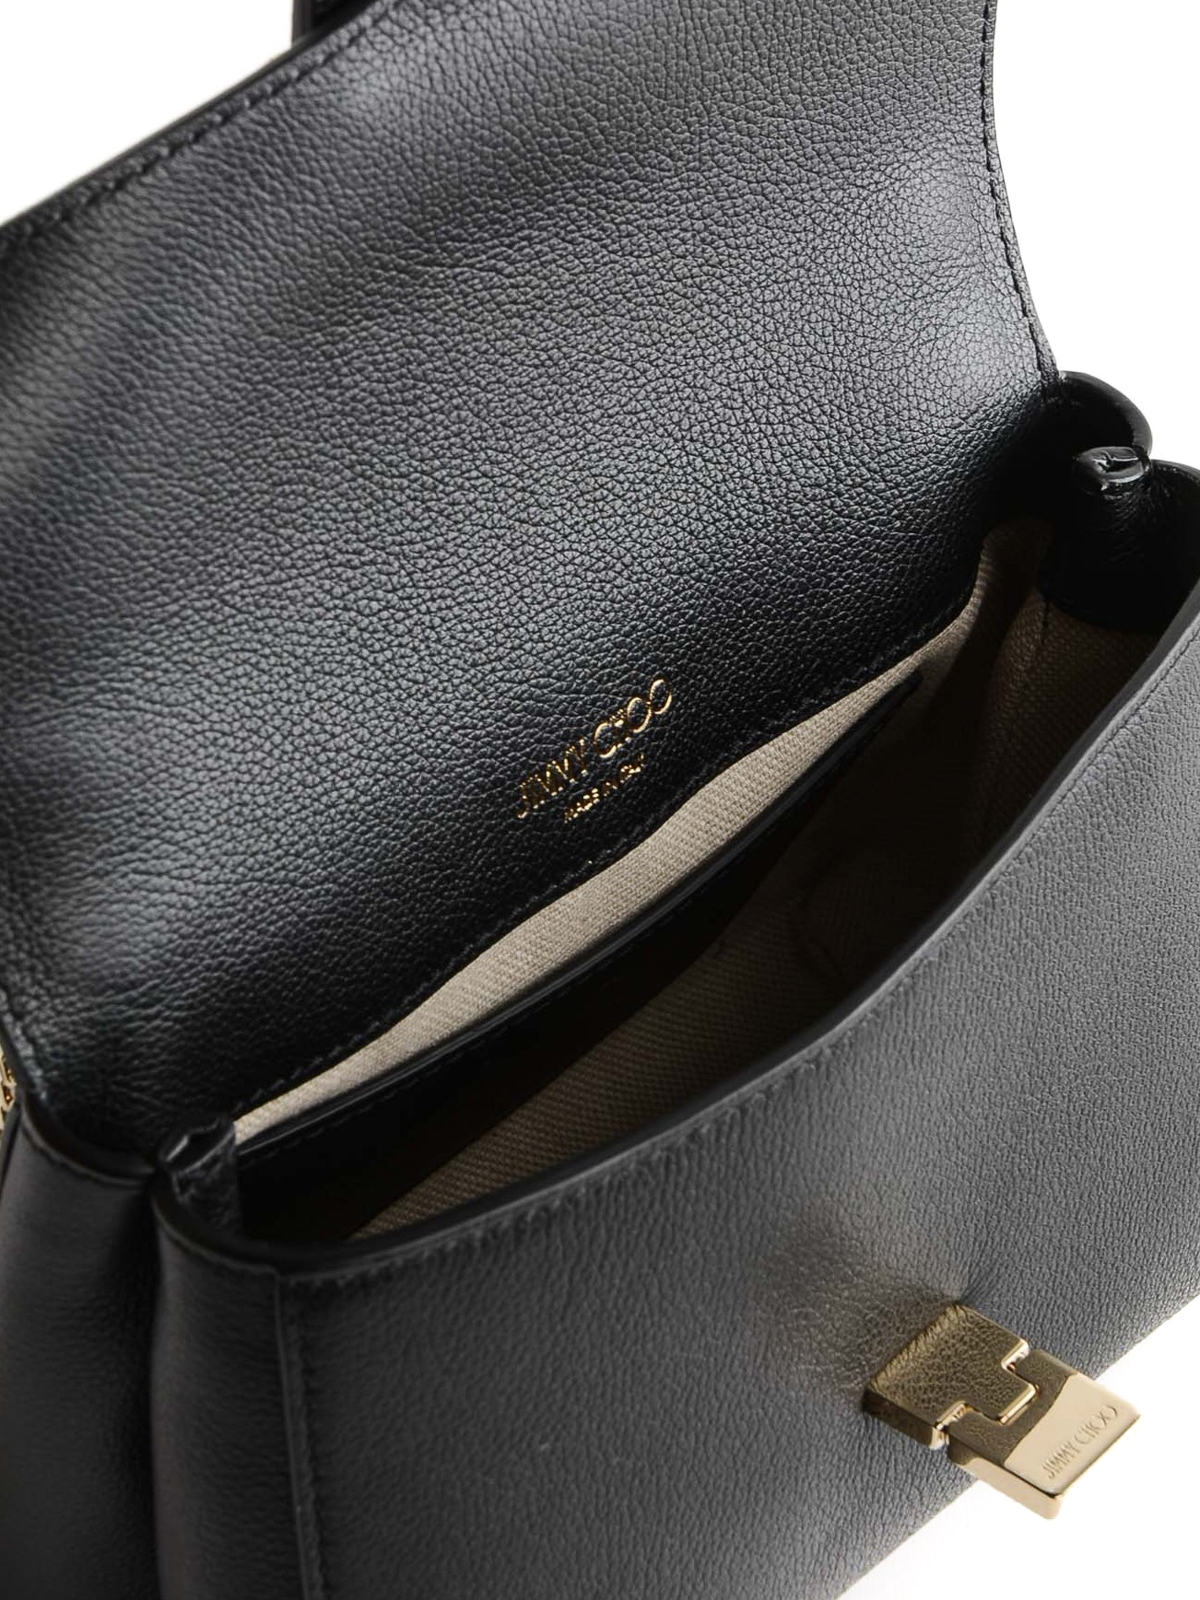 Mayanne - Genuine Leather Flap Crossbody Bag